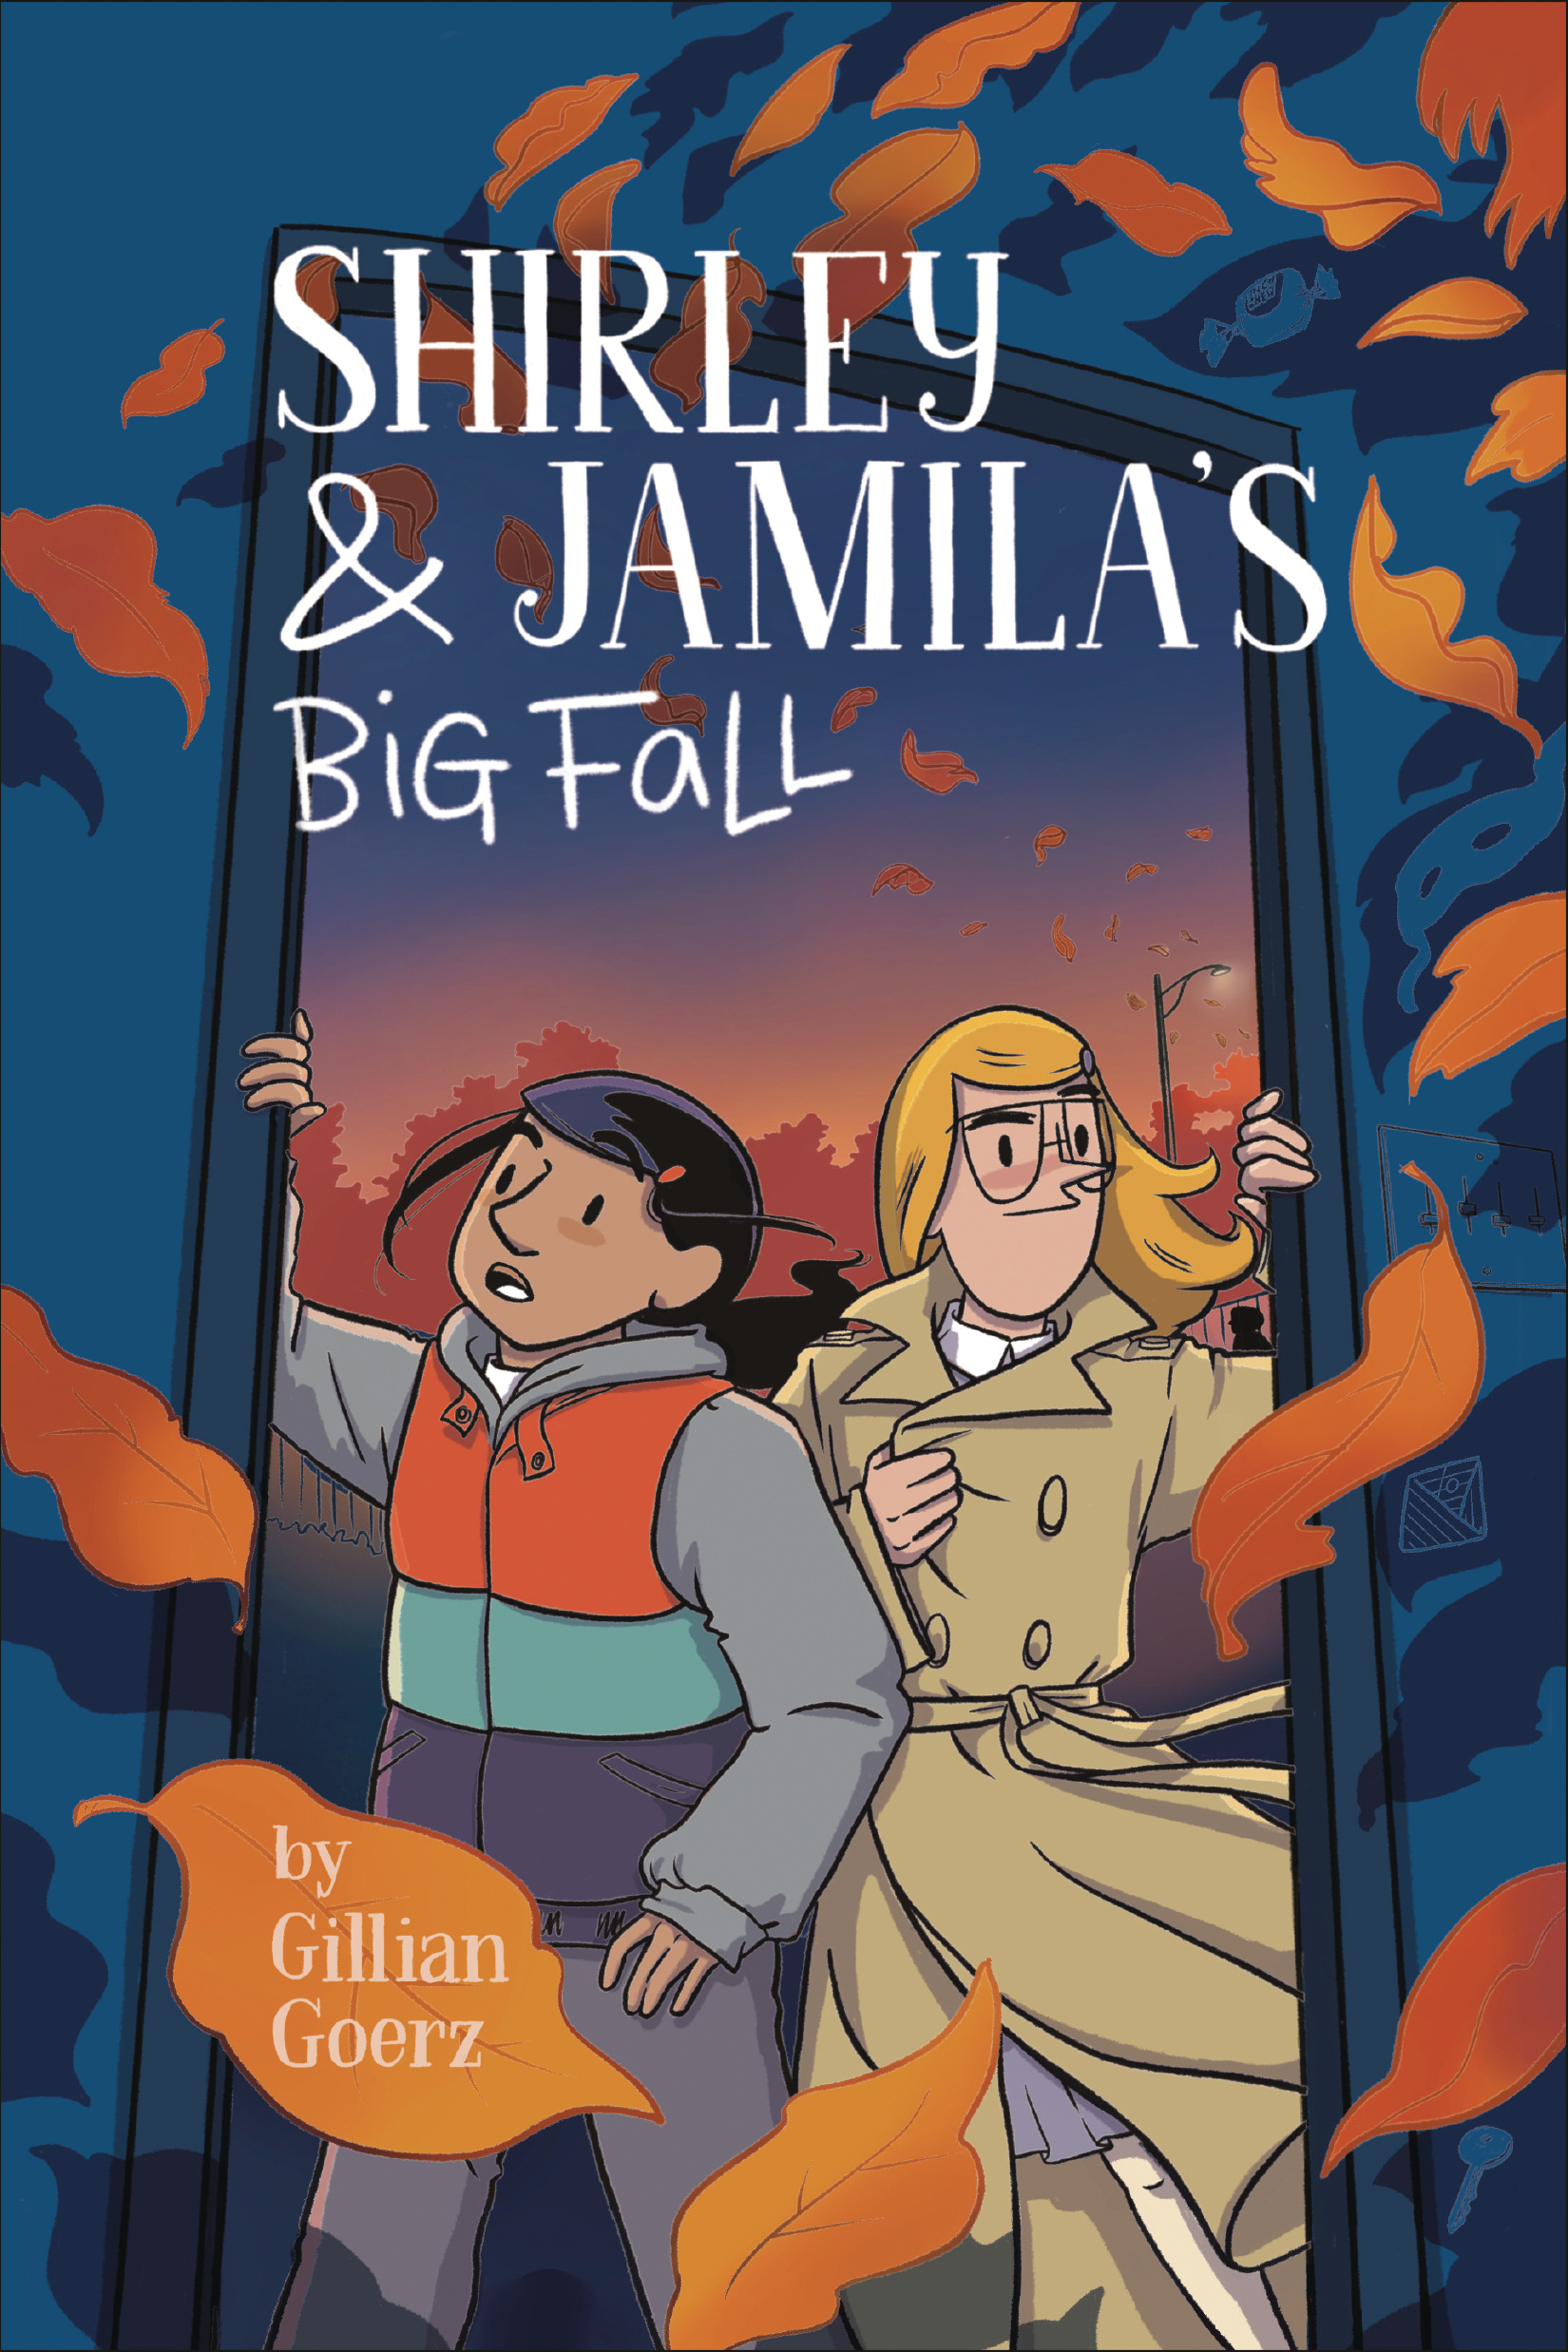 Shirley & Jamilas Big Fall Graphic Novel